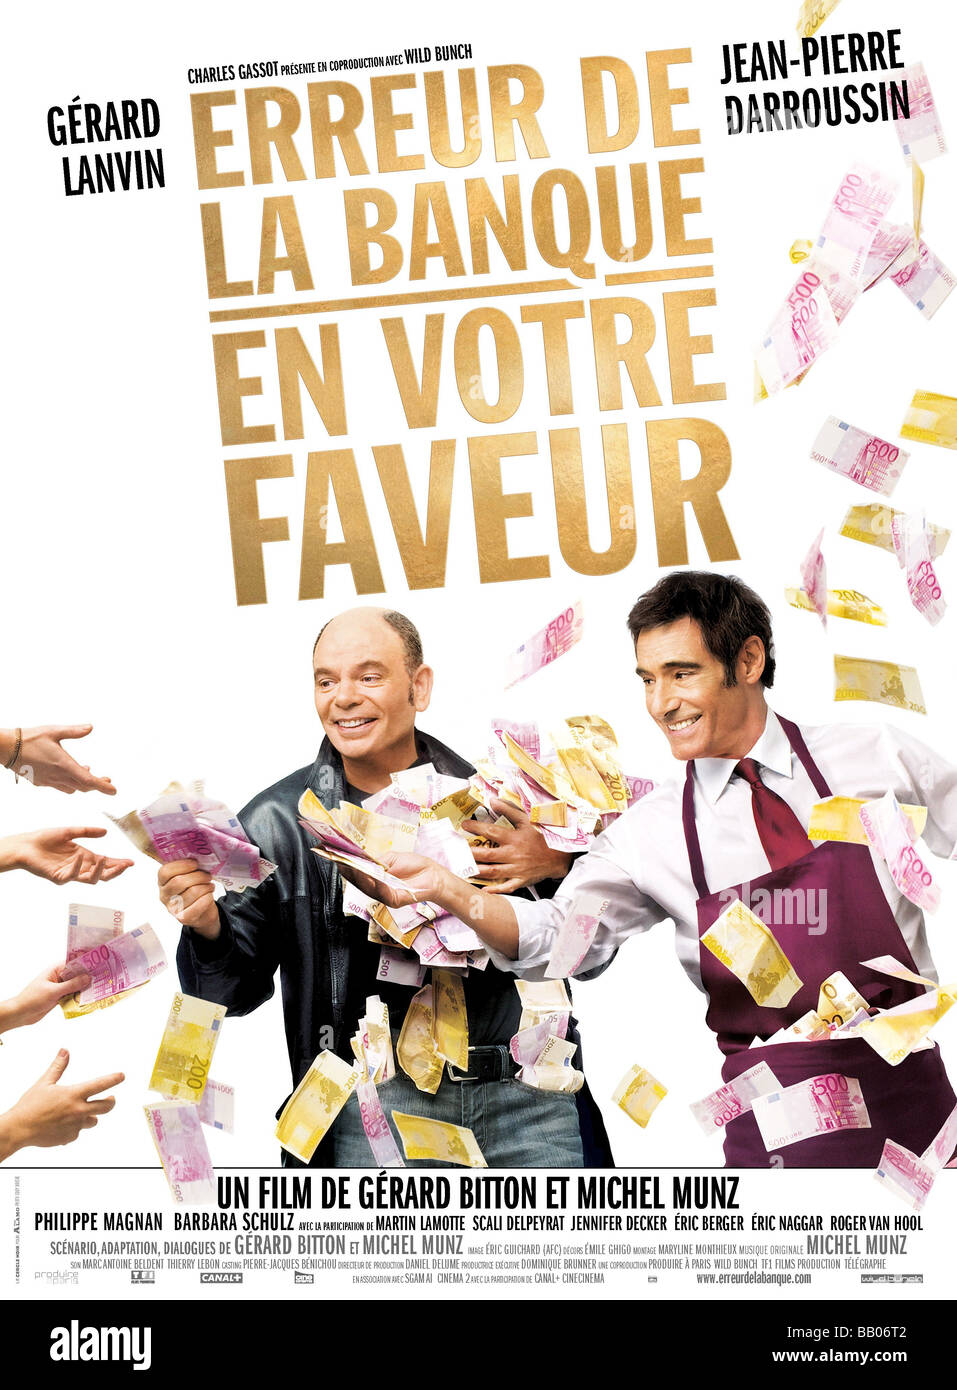 Erreur de la banque en votre faveur Year : 2009 Directors : Michel Munz, Gérard Bitton Jean-Pierre Darroussin, Gérard Lanvin Movie poster Stock Photo